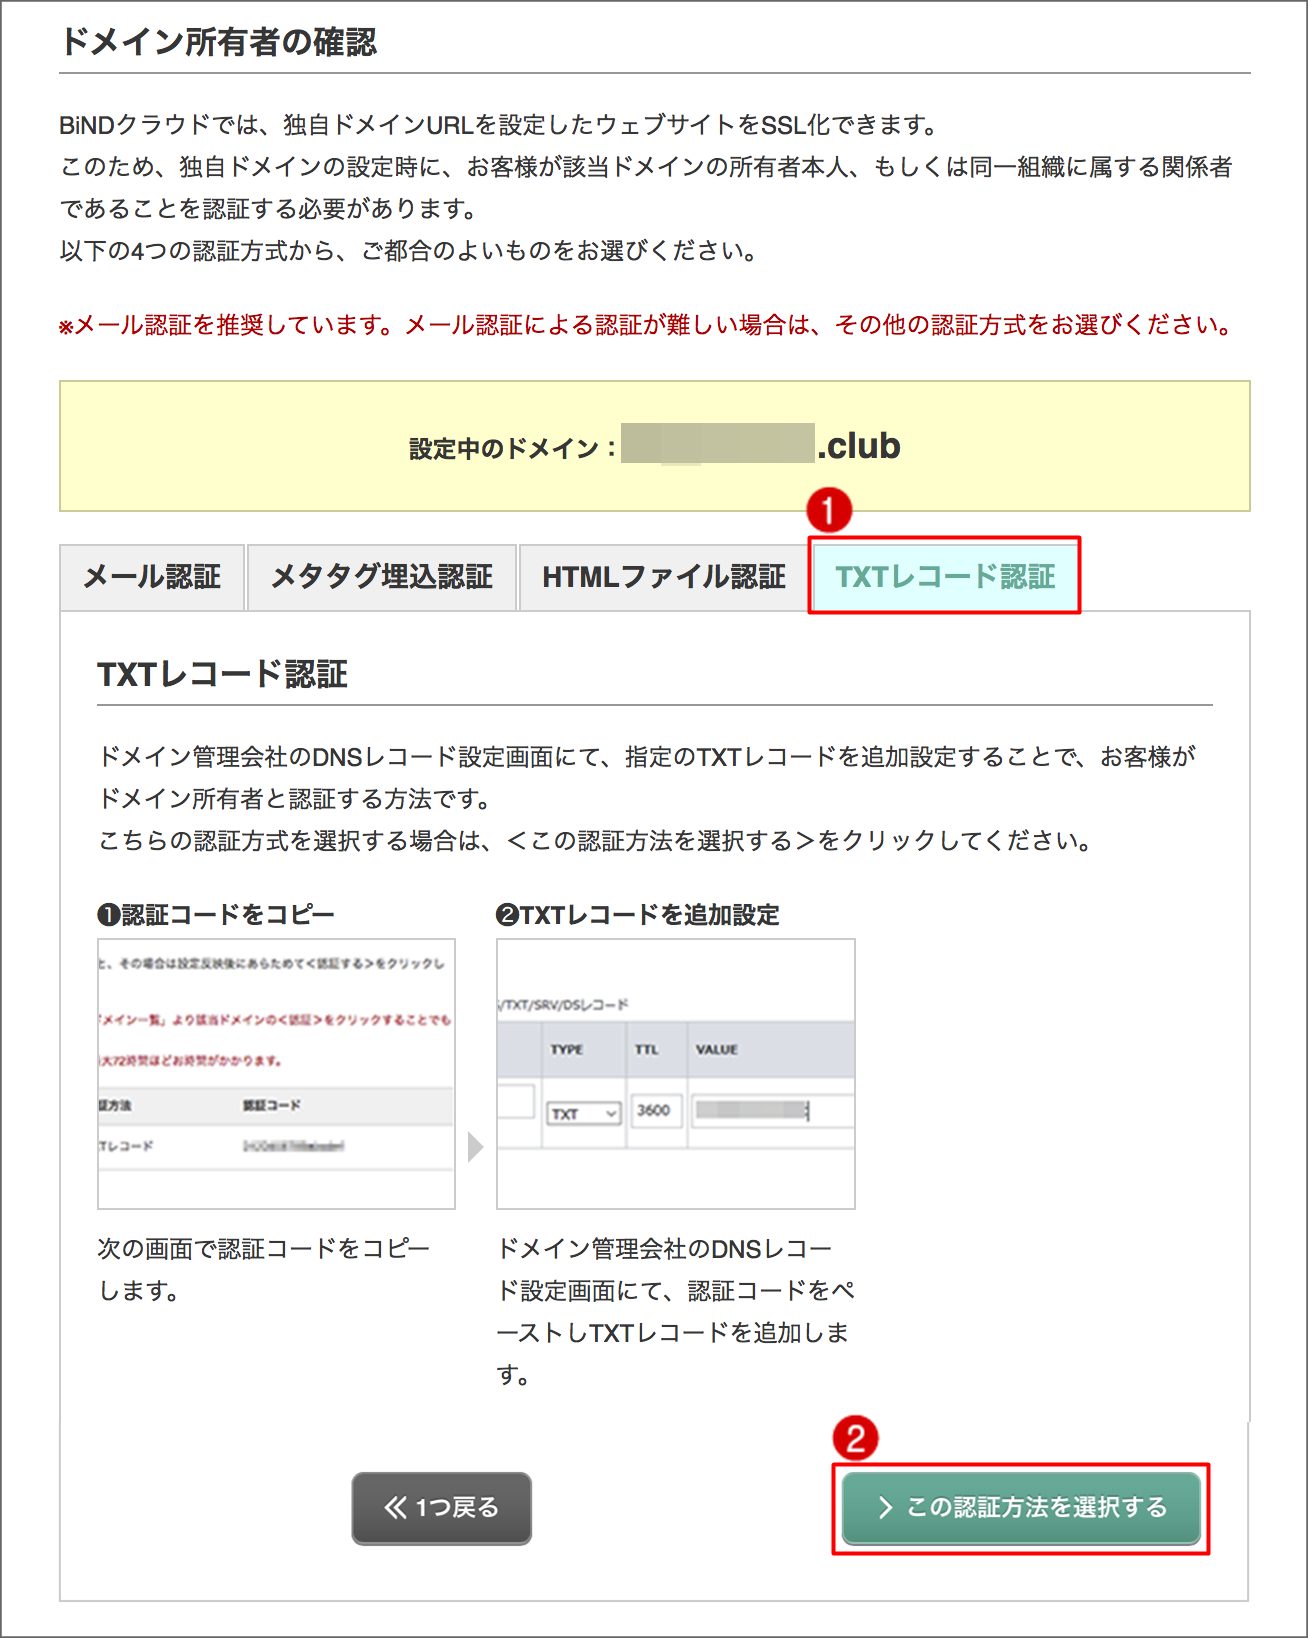 http://www.digitalstage.jp/support/weblife/manual/02-05-17_001.png